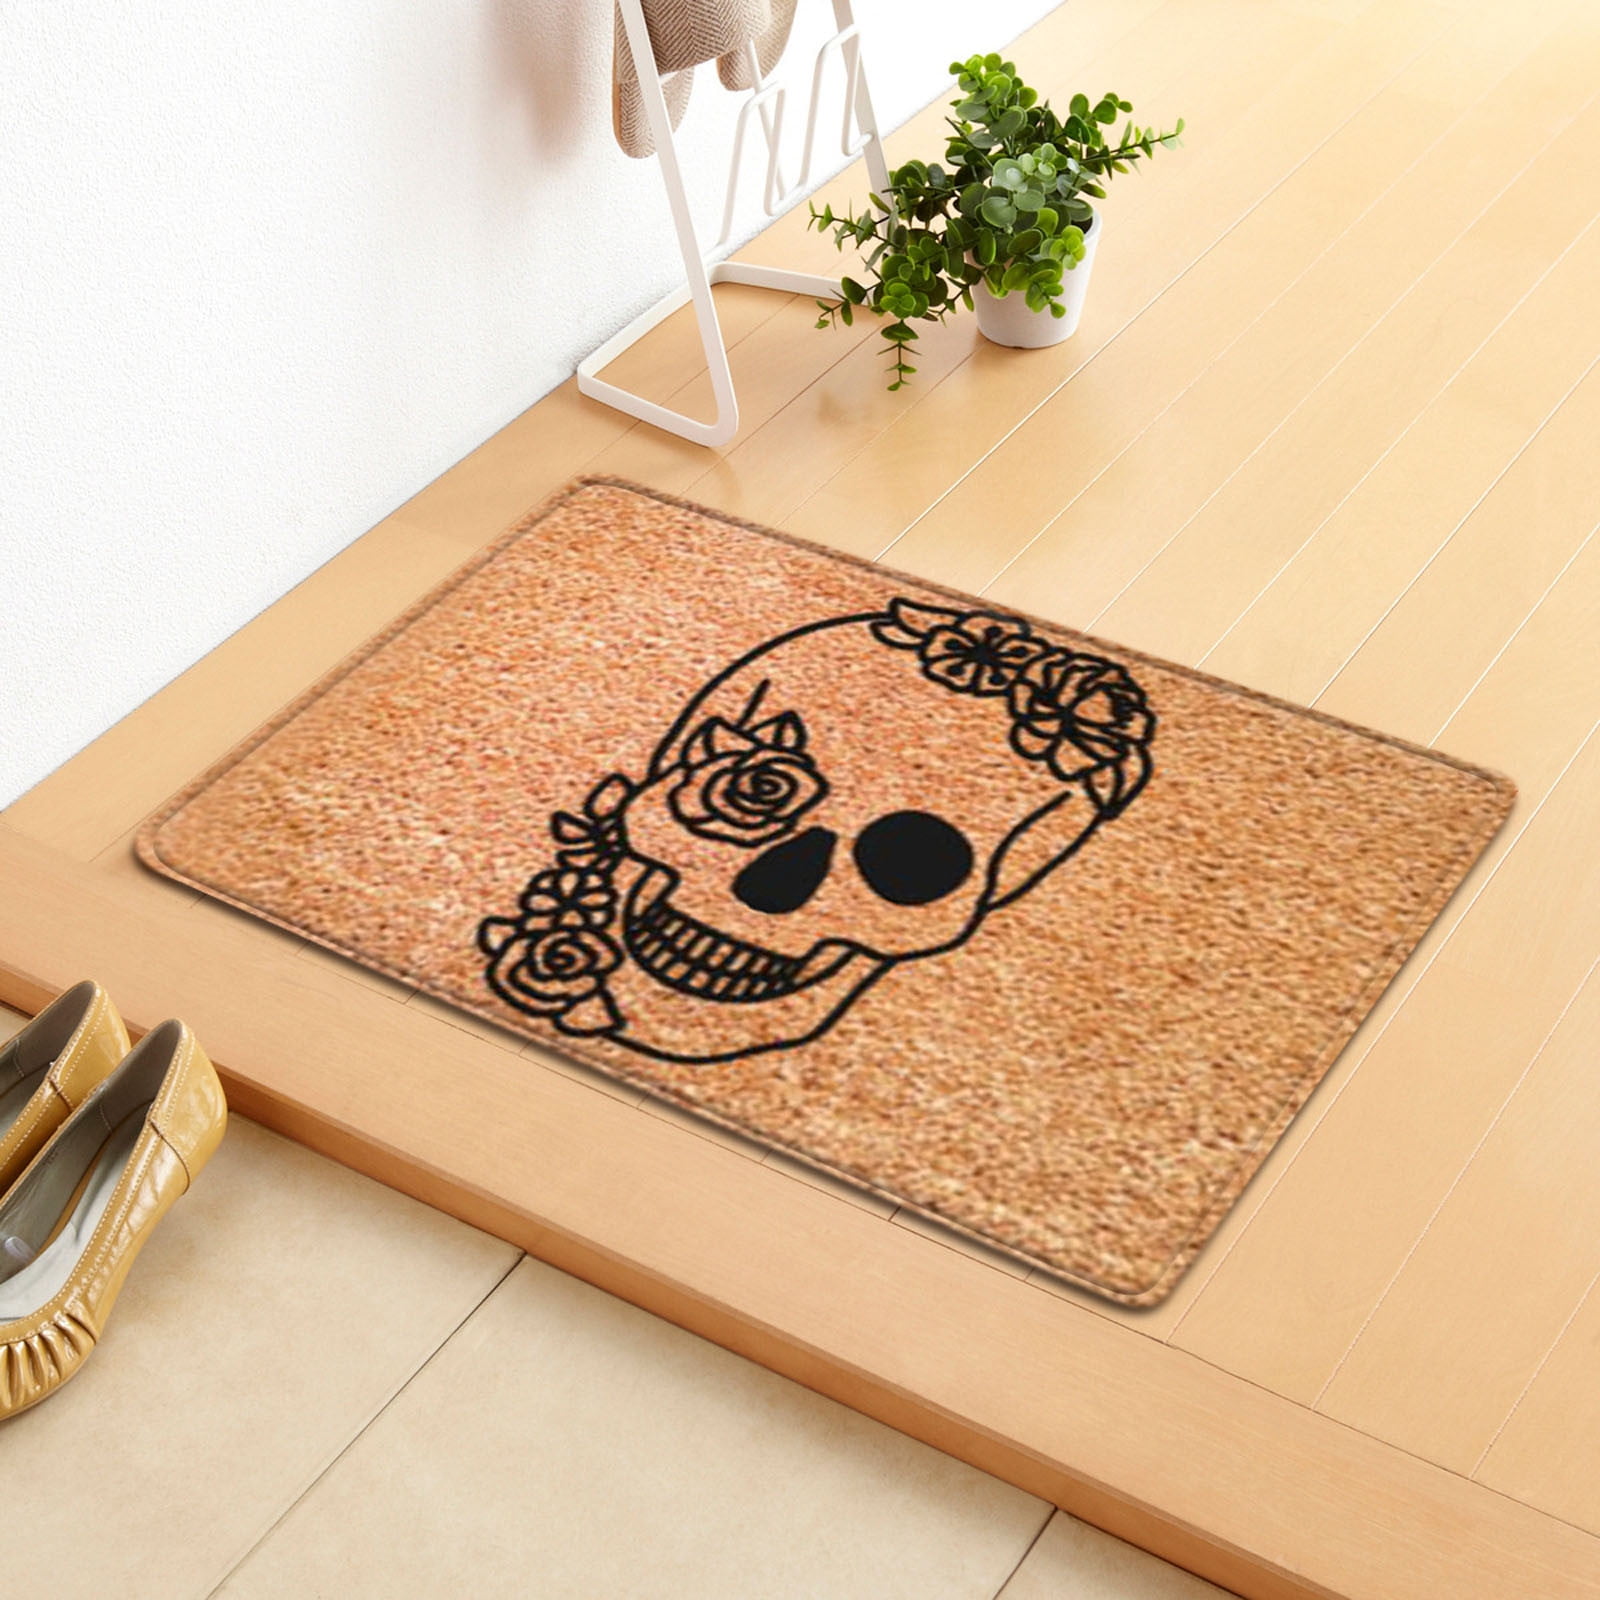 Halloween Home Carpet Clown Skeleton 3D Manhole Cover Horror Floor Mat Decor Hot